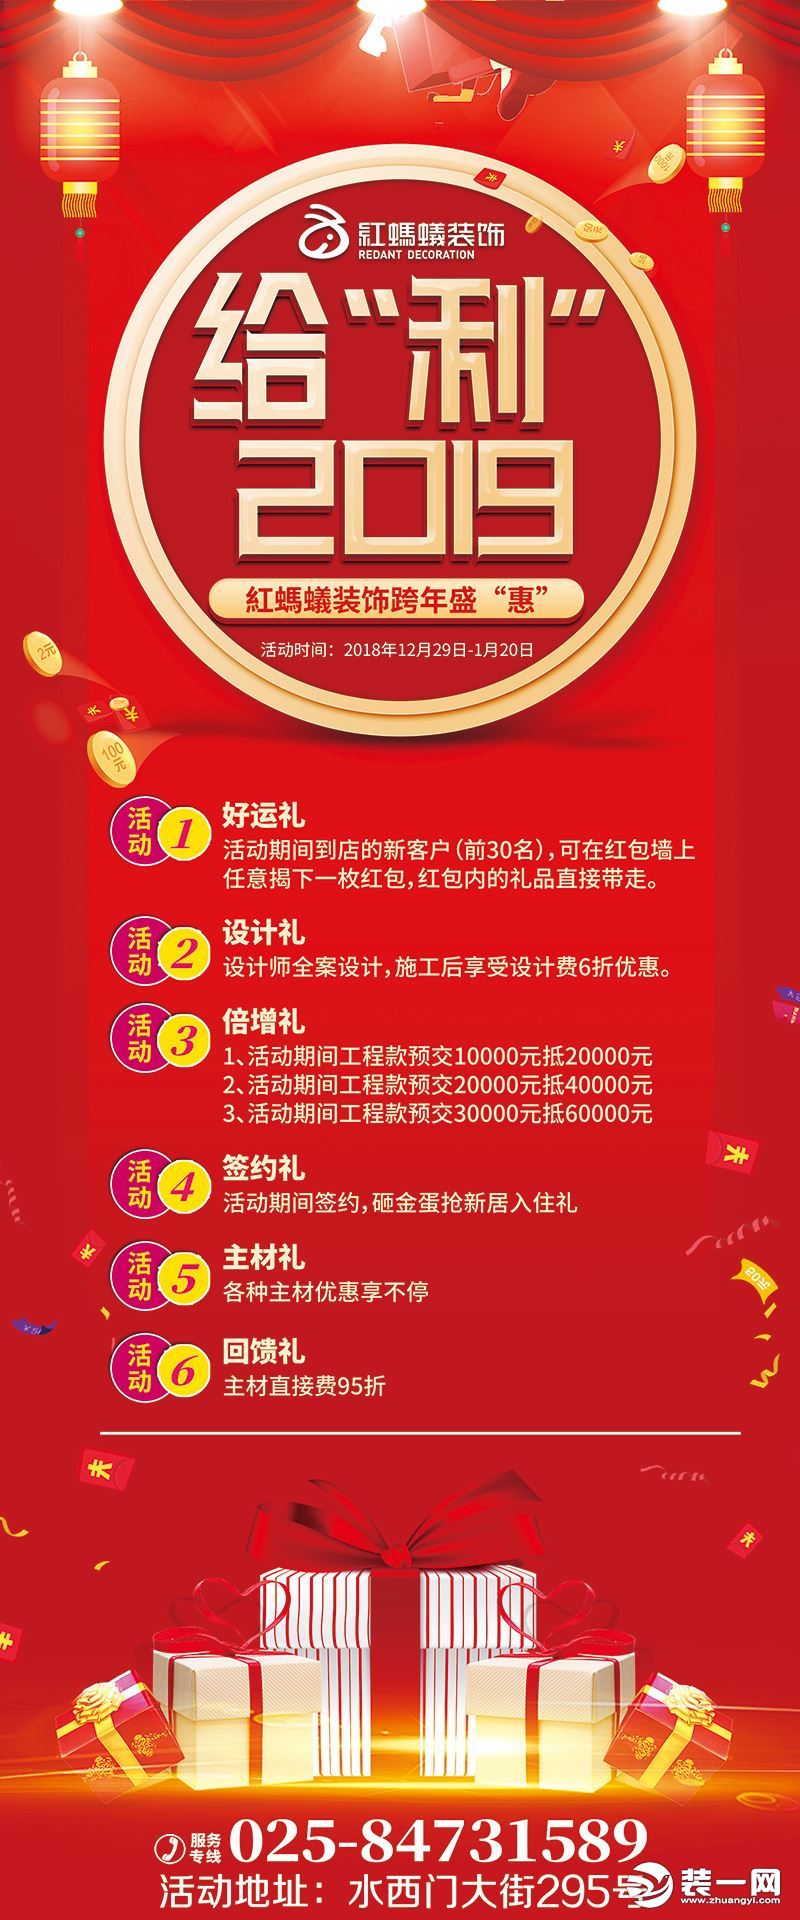 2019年1月20日前南京红蚂蚁跨年盛会